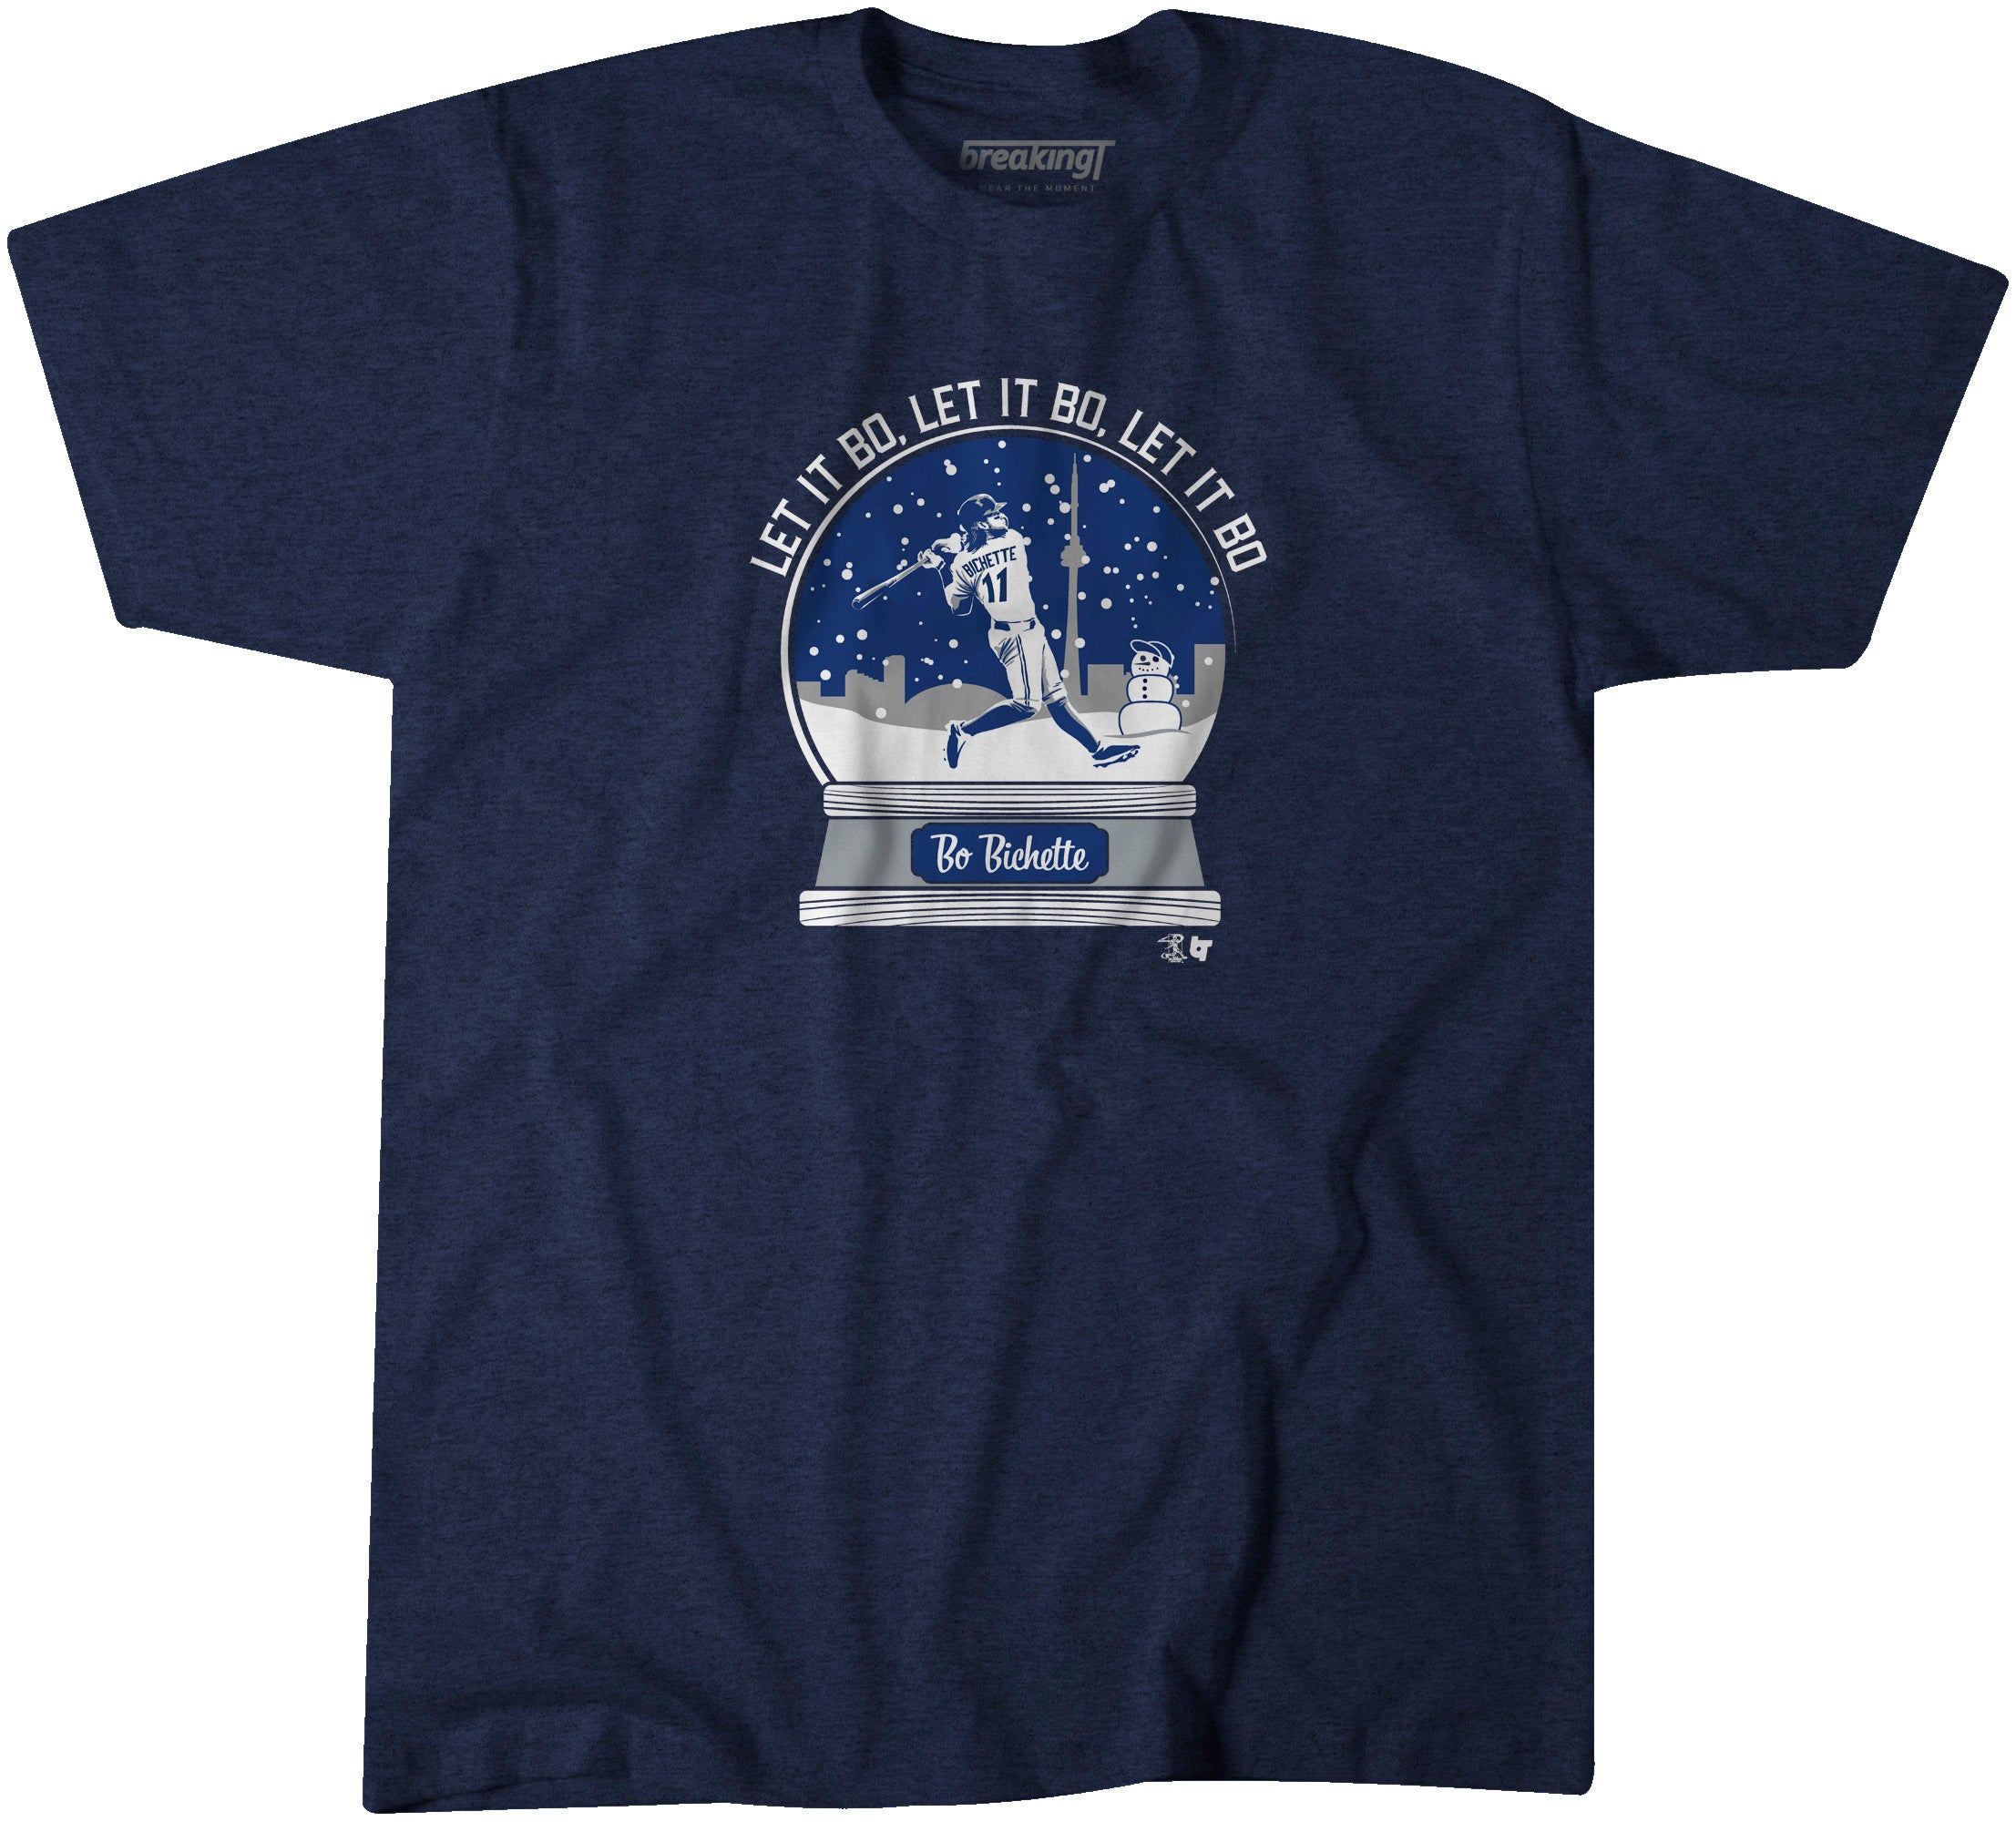 Bo Bichette Shirt - Let It Bo, MLBPA Officially Licensed - BreakingT